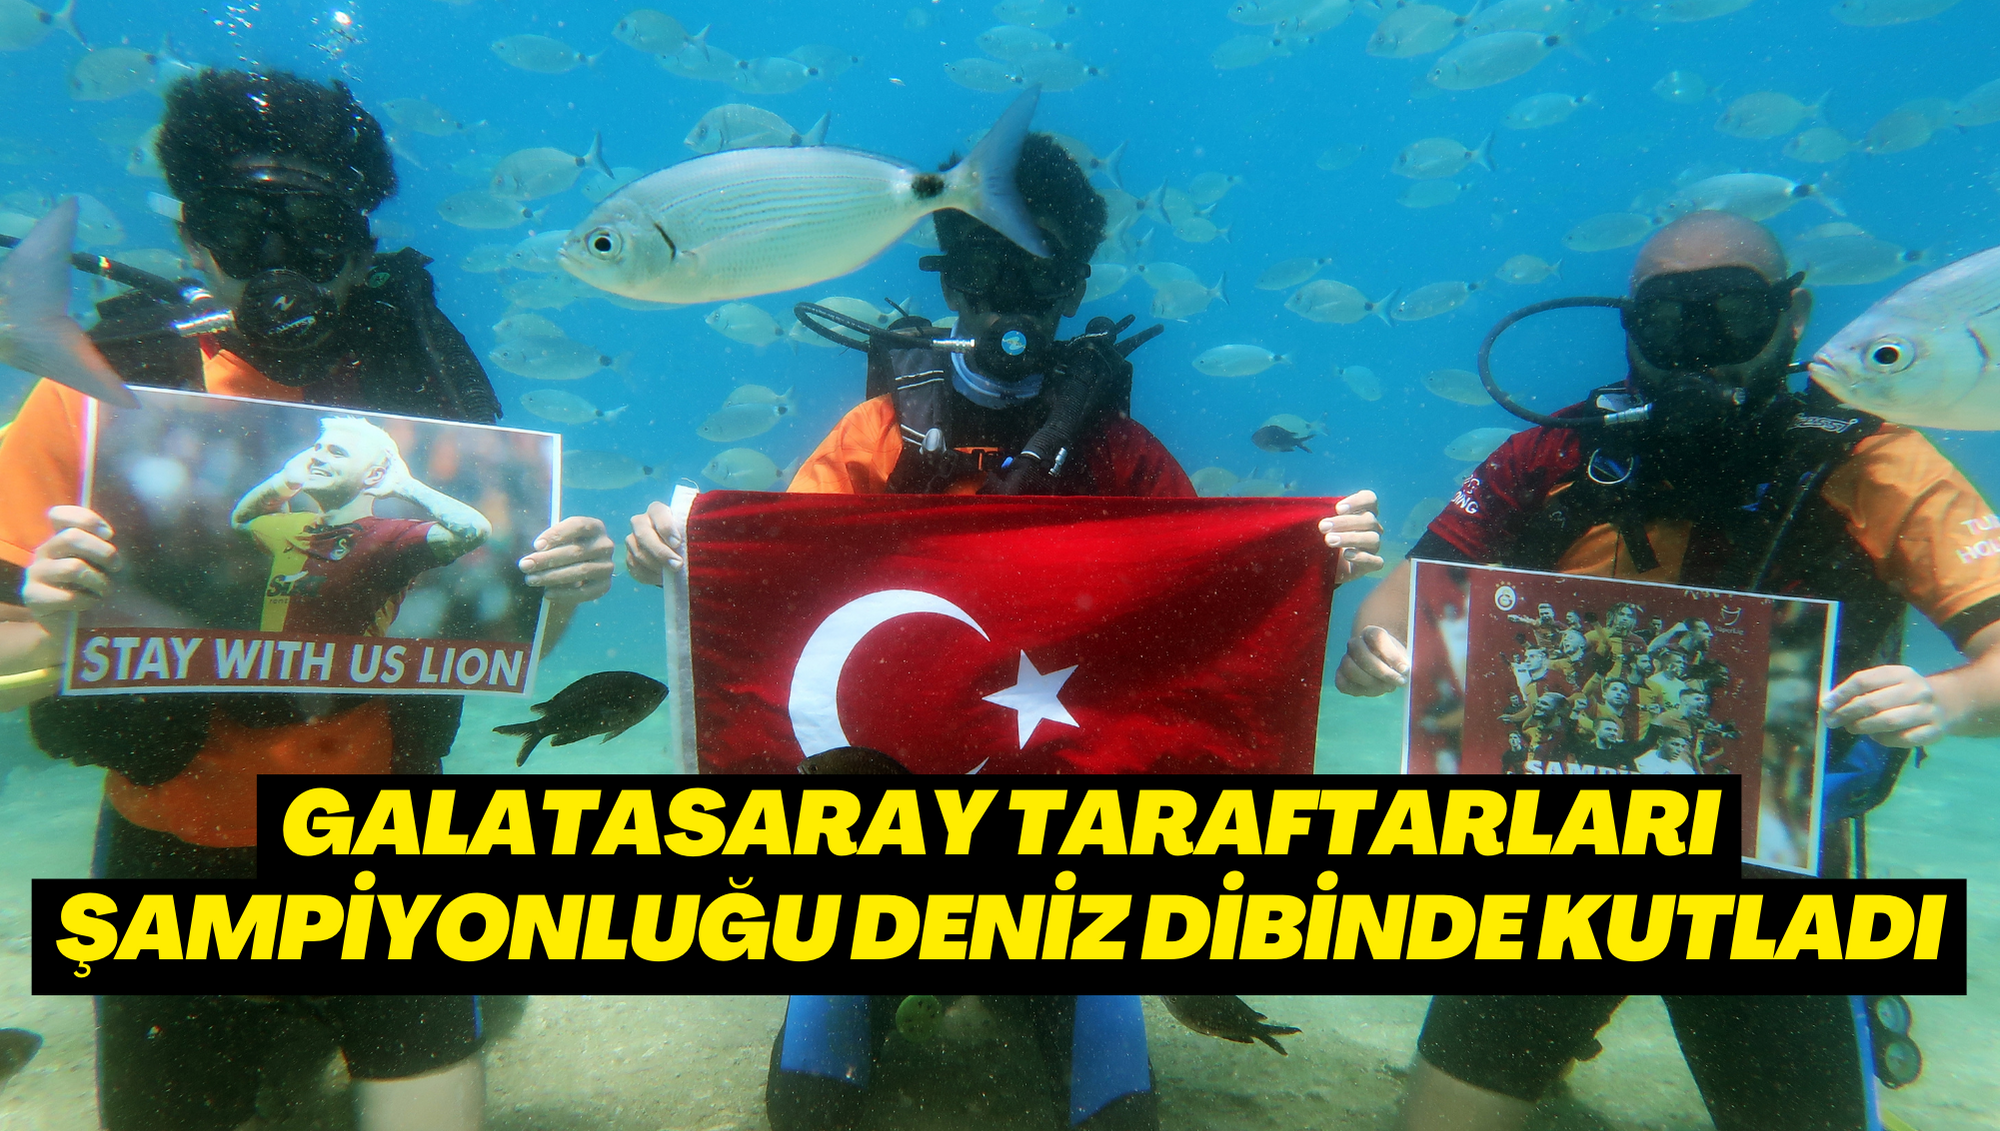 Galatasaray taraftarları şampiyonluğu deniz dibinde kutladı